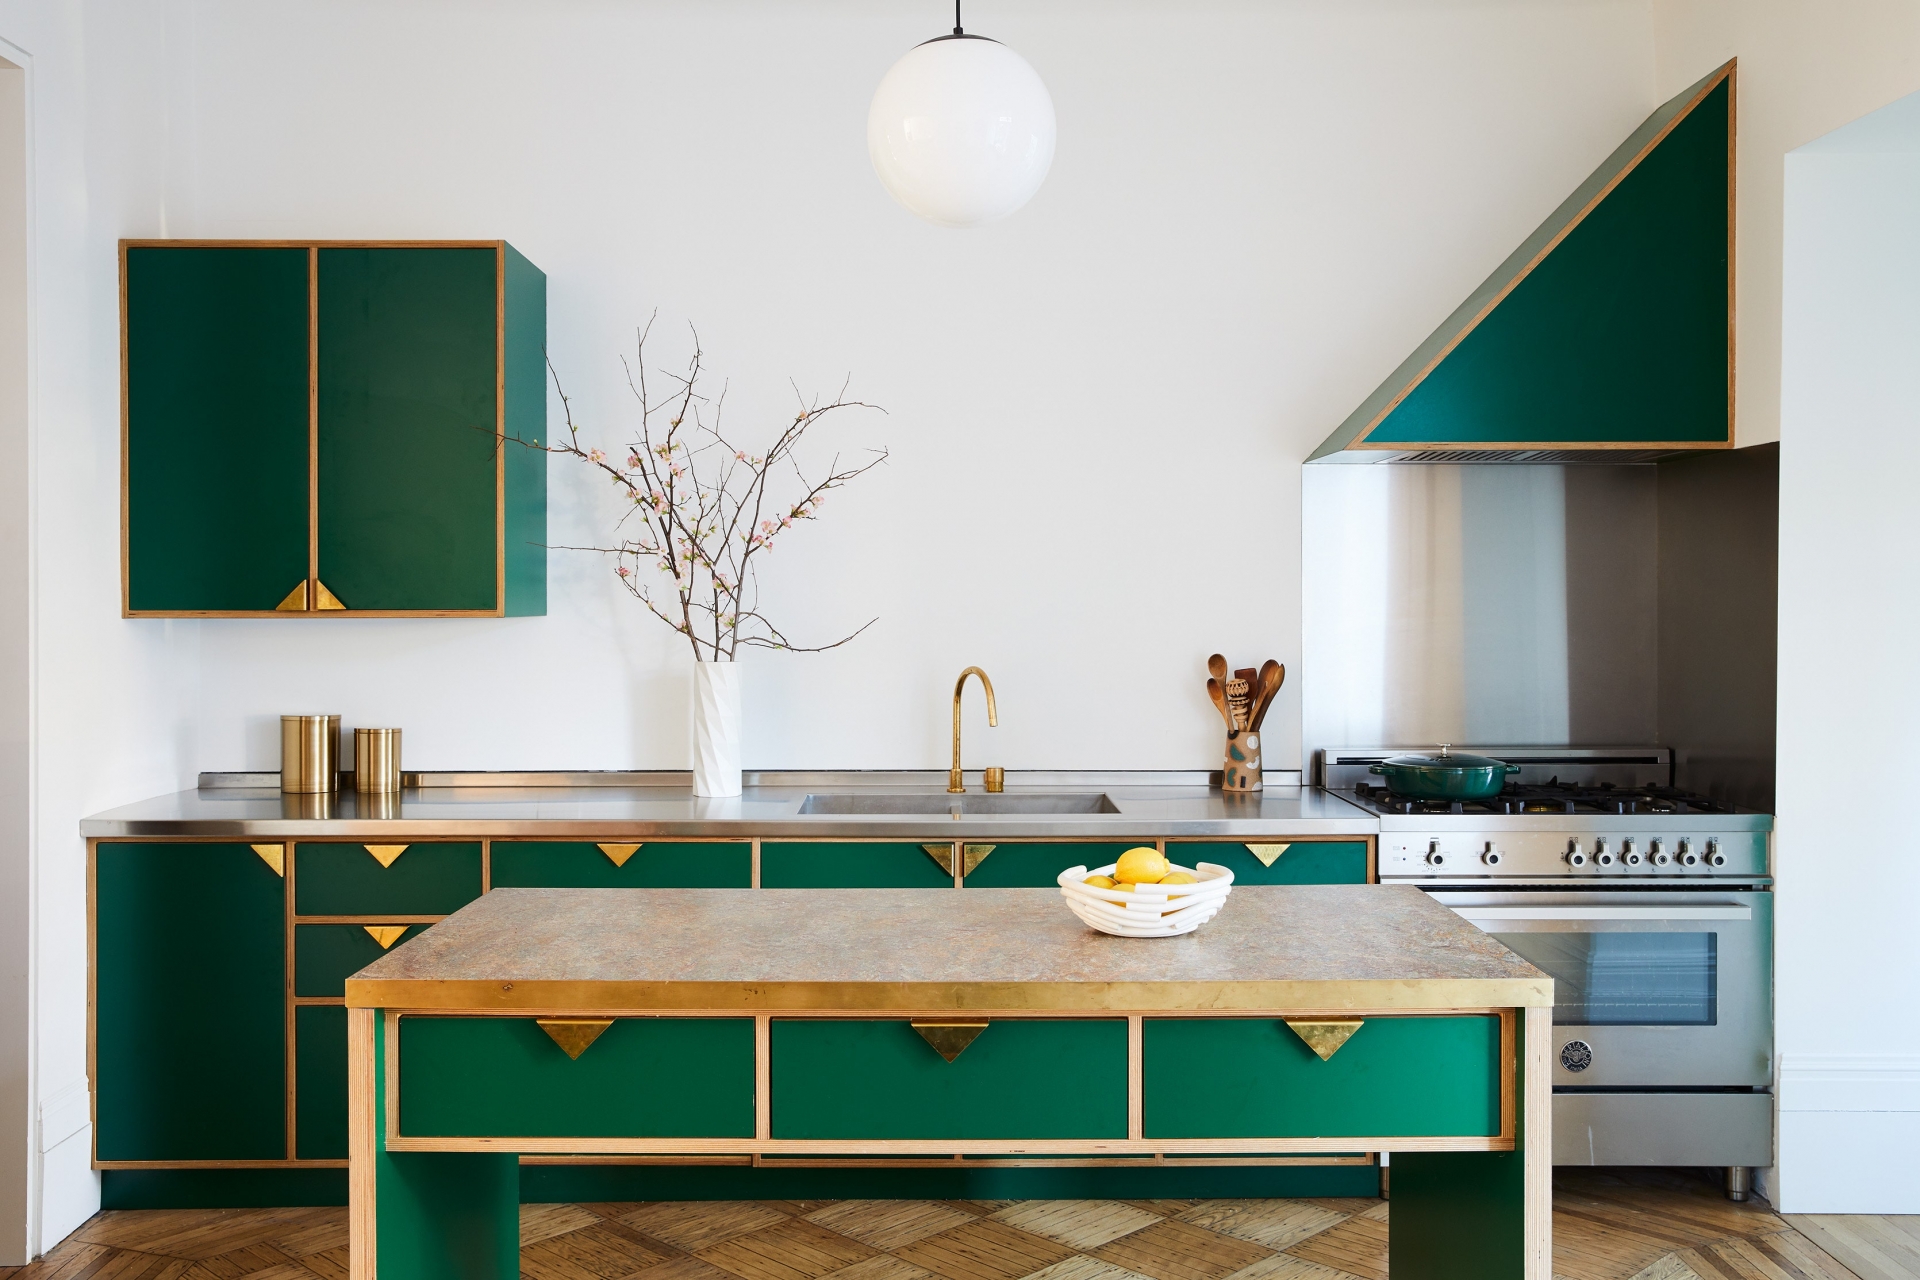 Dù thiết kế theo phong cách cổ điển hay hiện đại thì màu xanh ngọc lục bảo cũng có thể làm toát lên vẻ đẹp bạn mong muốn. Và phòng bếp tối giản này là minh chứng cho nhận xét trên khi lấy sắc màu làm điểm nhấn thay cho nội thất.